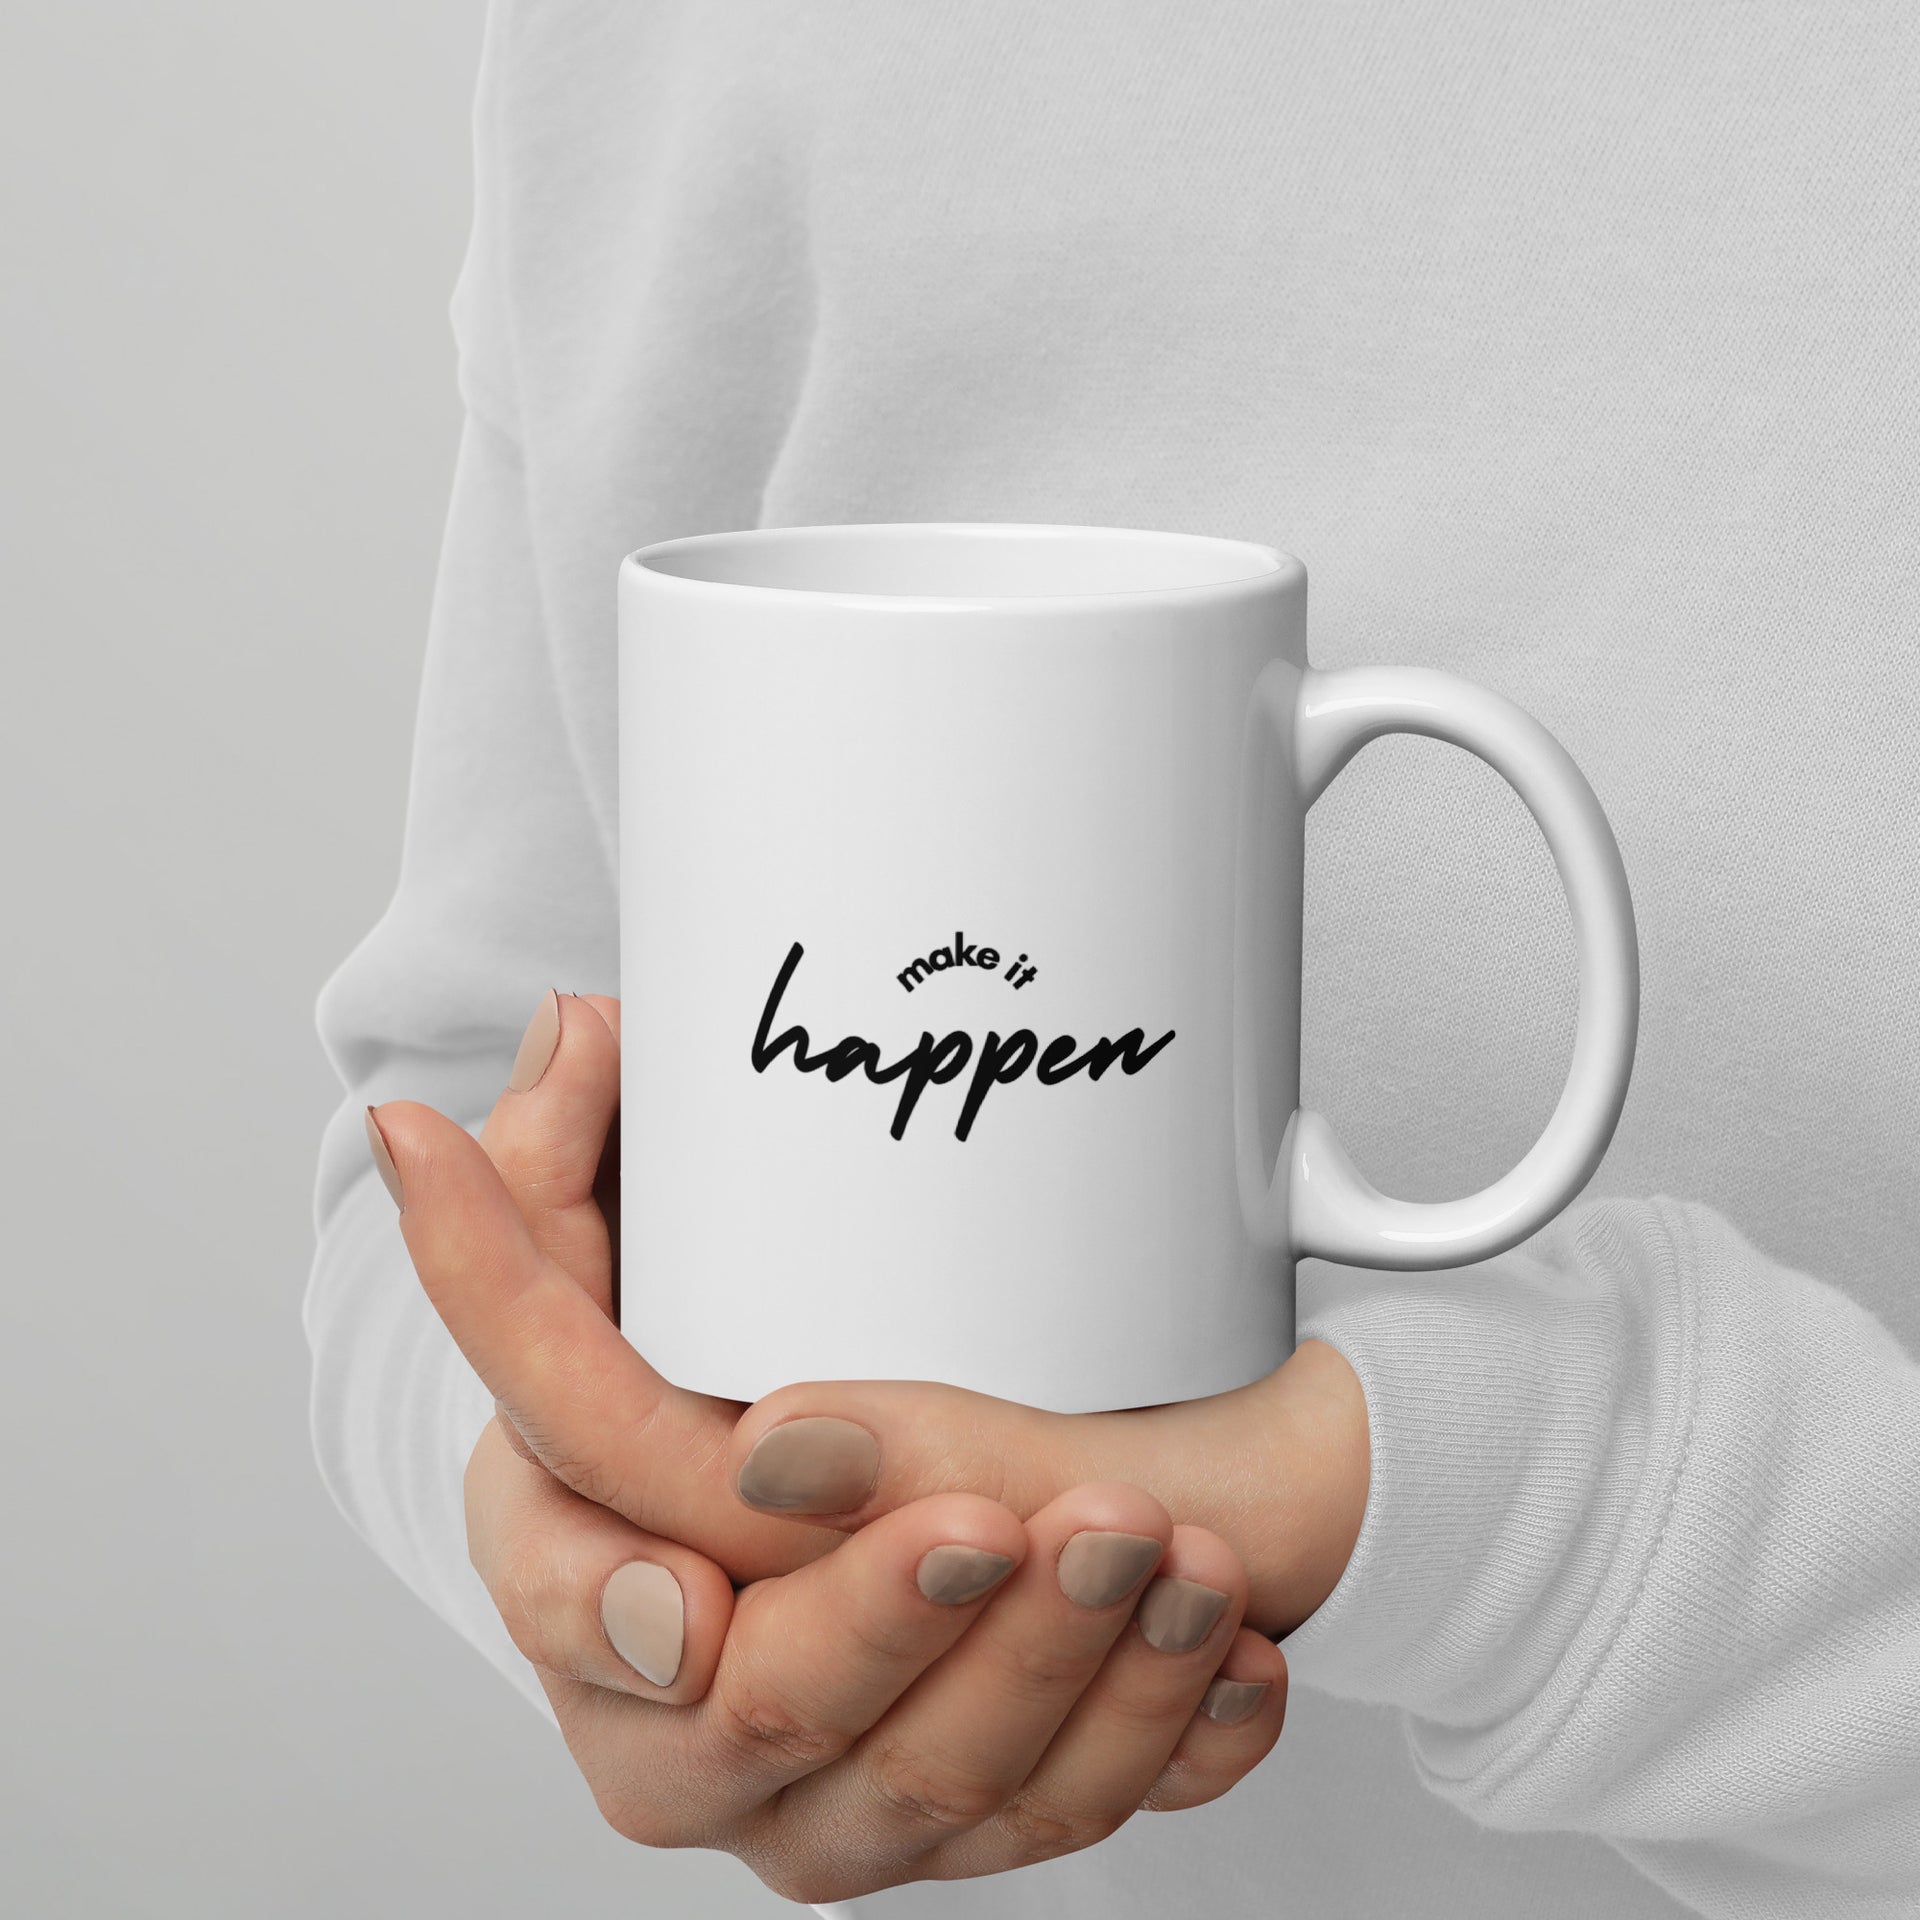 Make It Happen - Coffee Mug